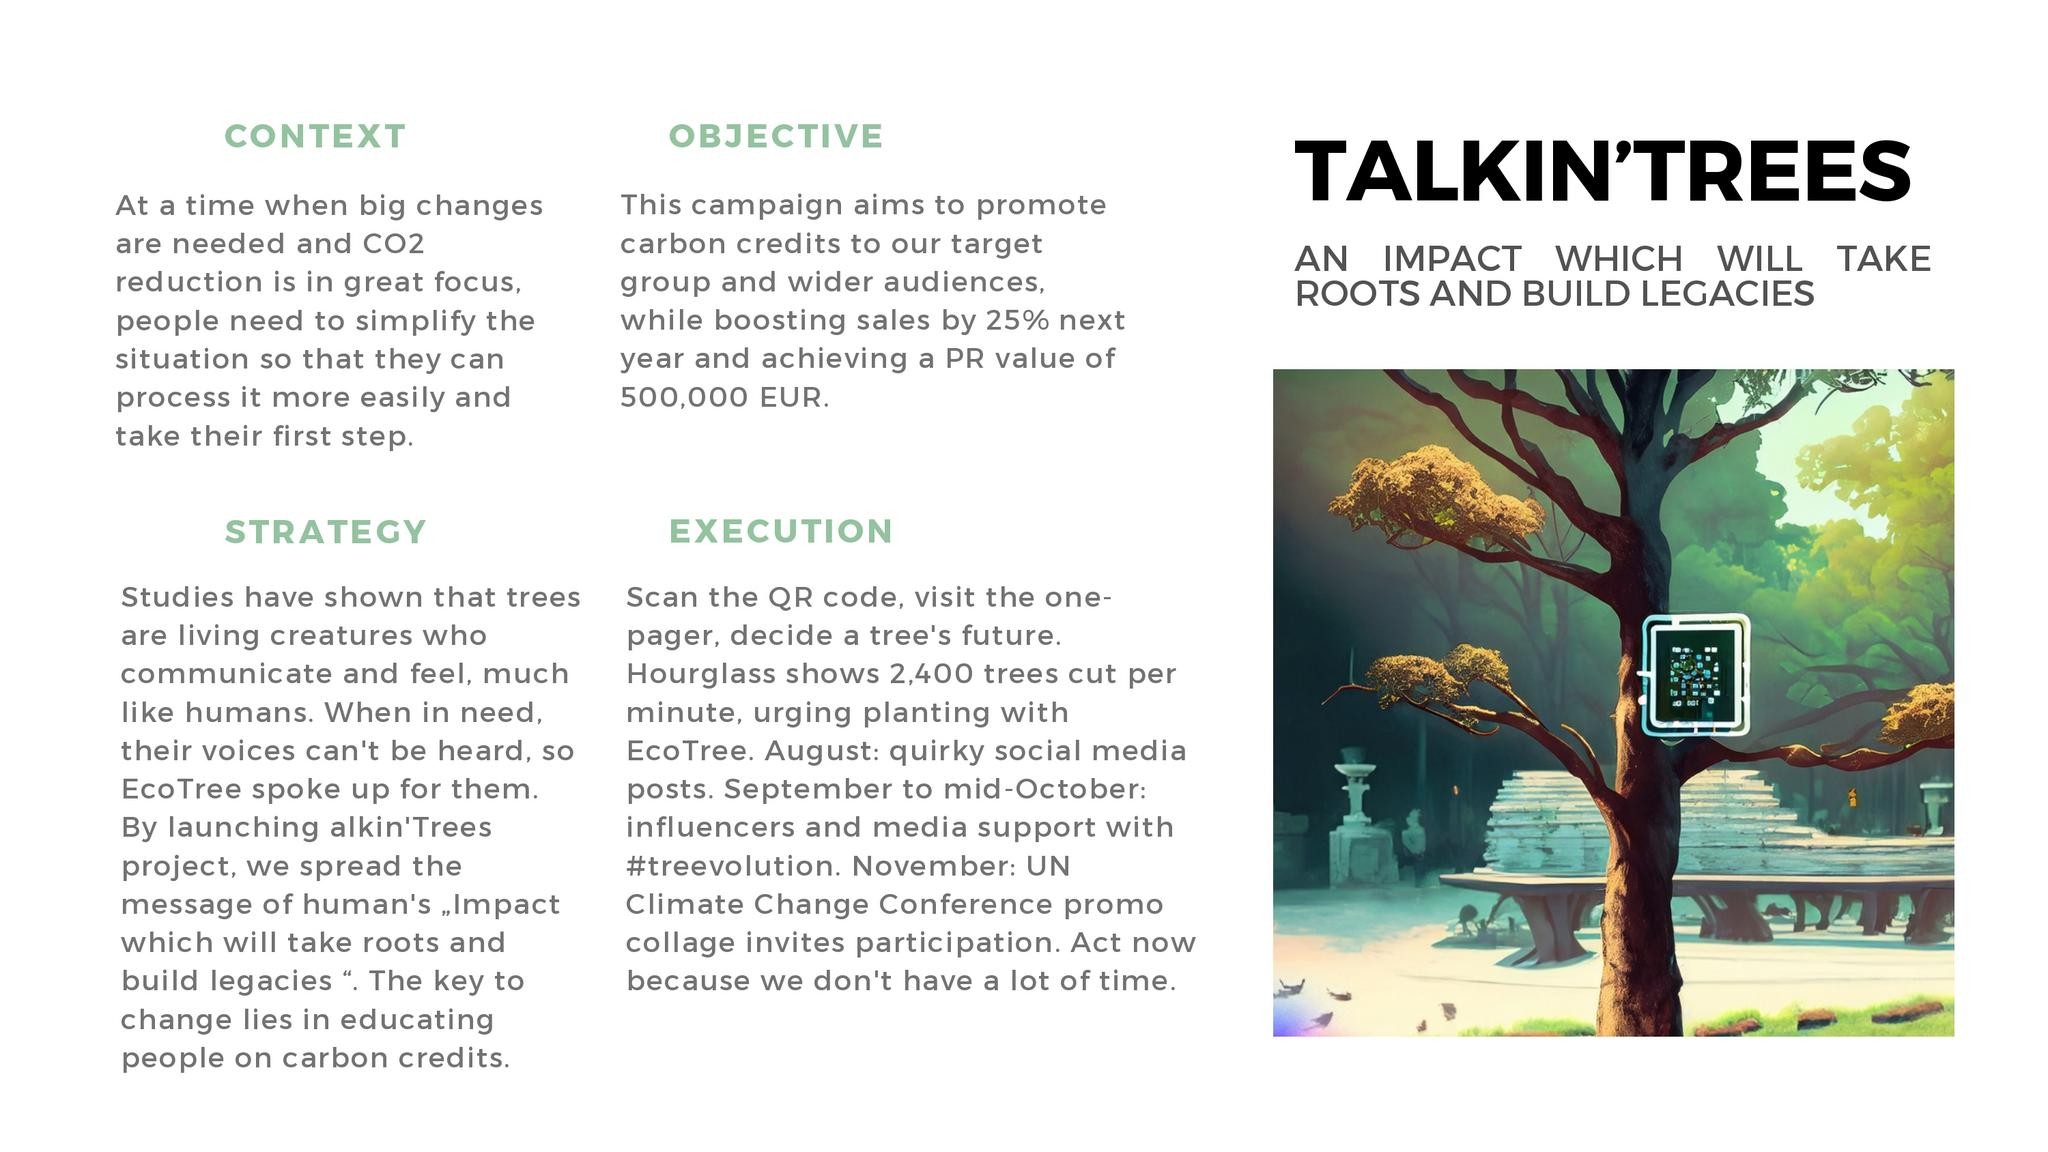 Talkin'trees